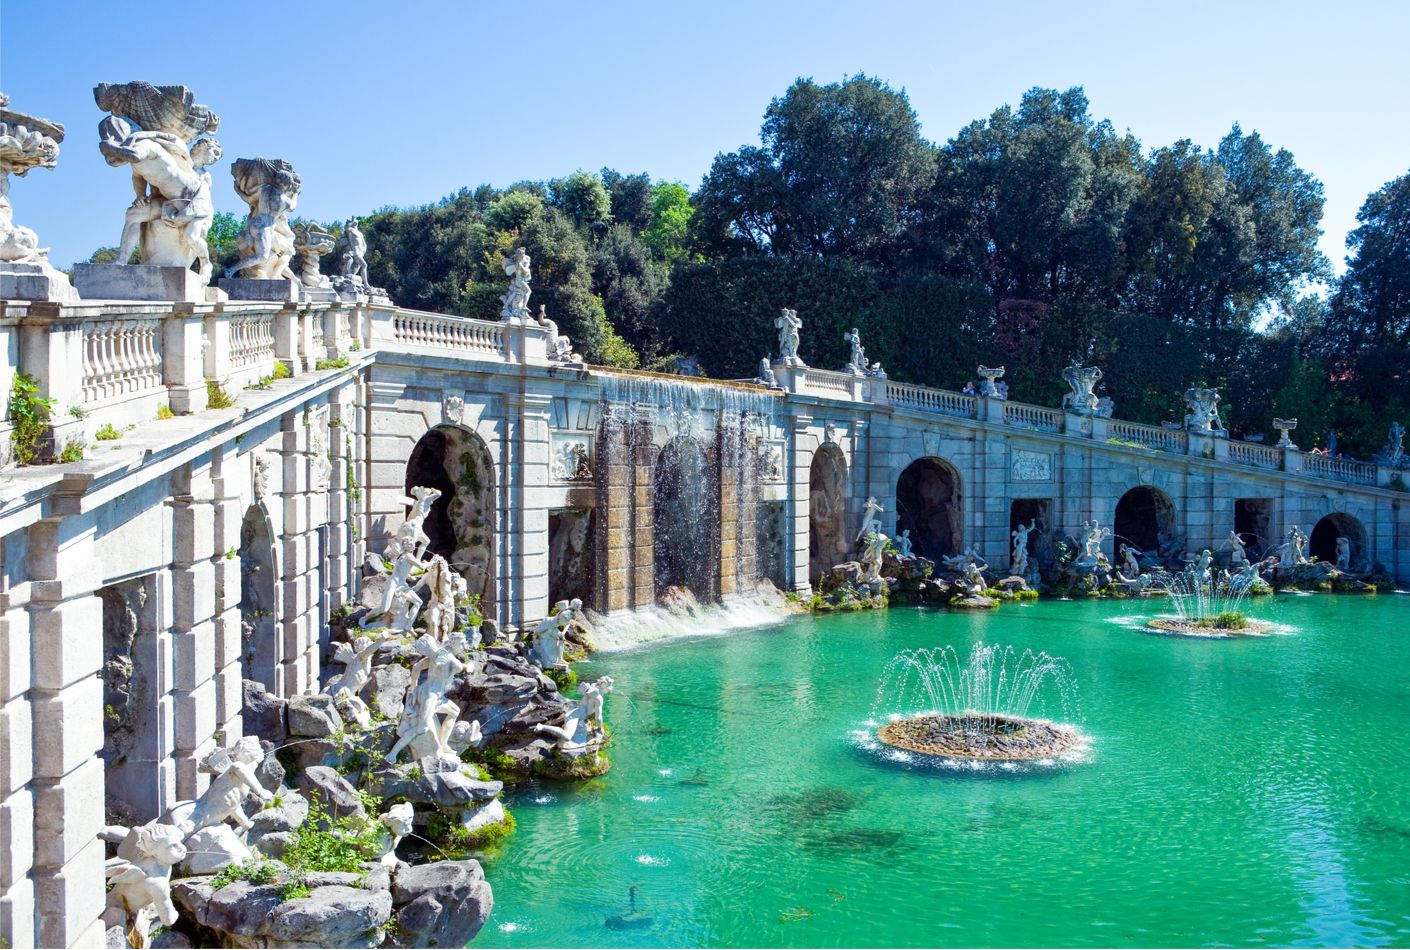 Fountain in the gardens of the Reggia di Caserta